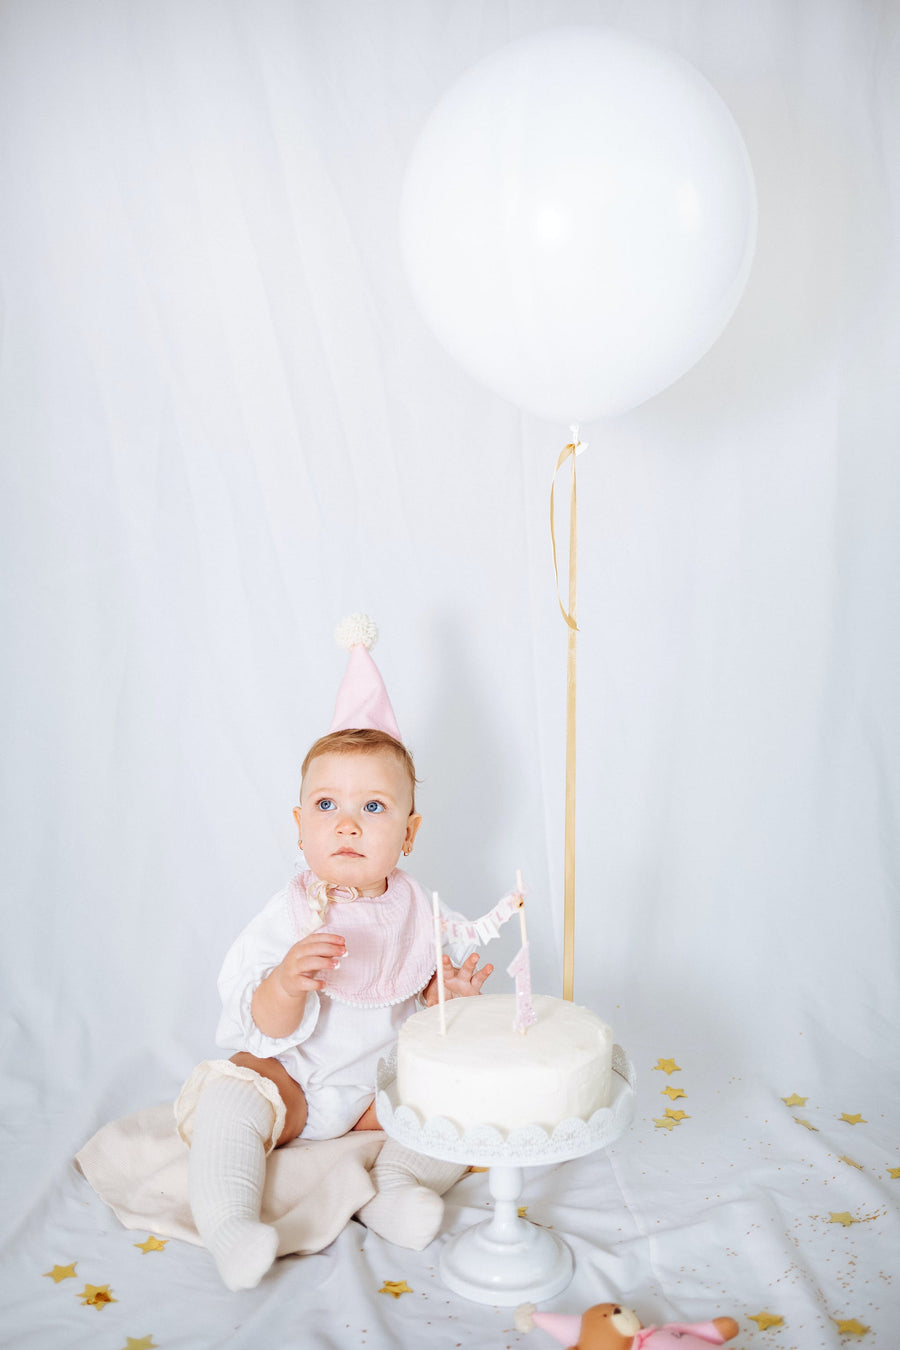  a baby celebrating 